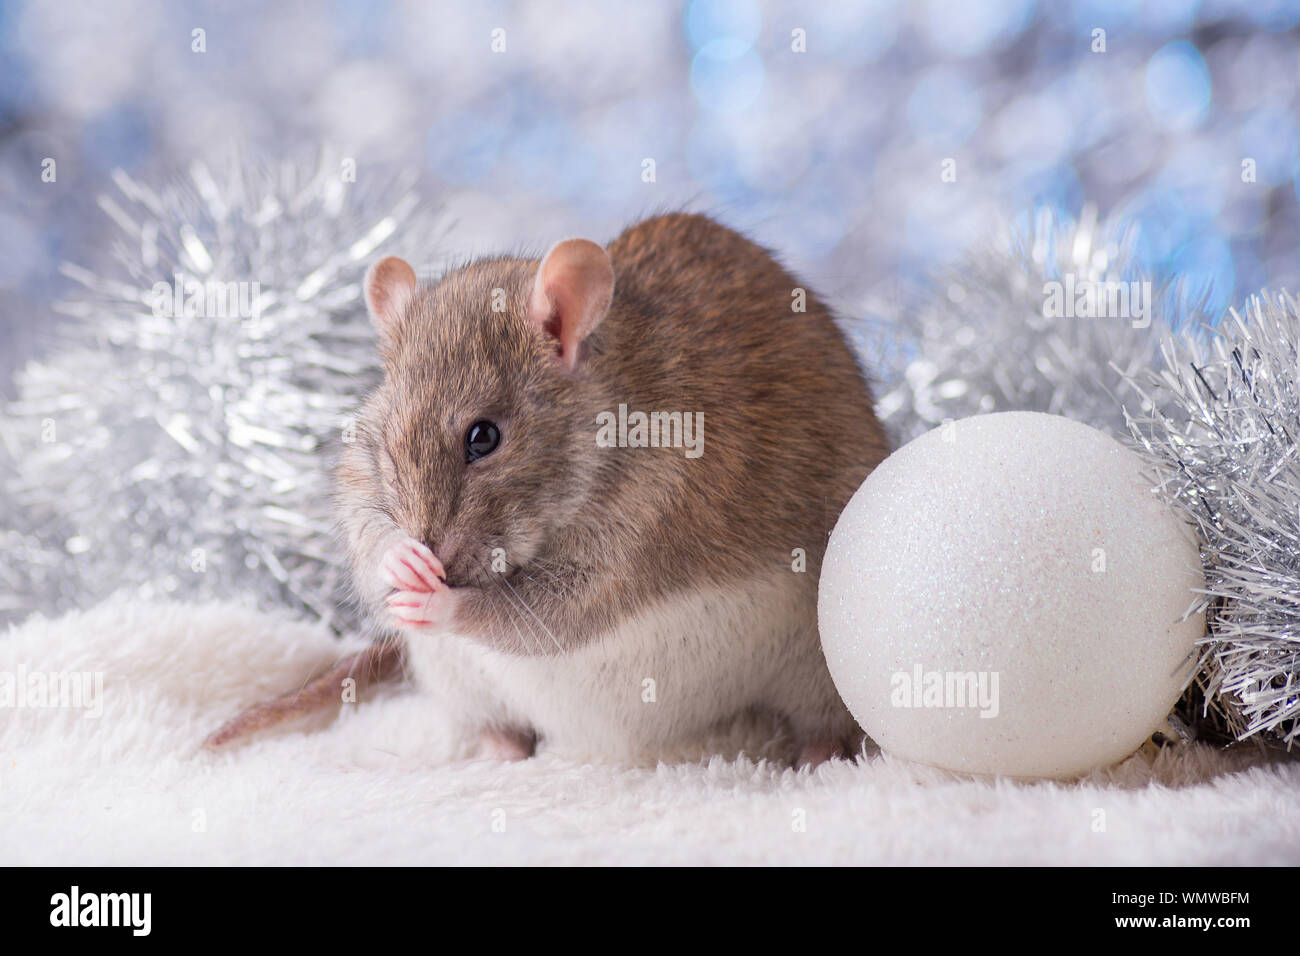 Neues Jahr Konzept. Cute white inländischen Ratte im Dekor ist ein neues Jahr. Symbol für das Jahr 2020 ist eine Ratte. Geschenke, Spielzeug, Girlanden, Weihnachtsbaum, Zweige Stockfoto